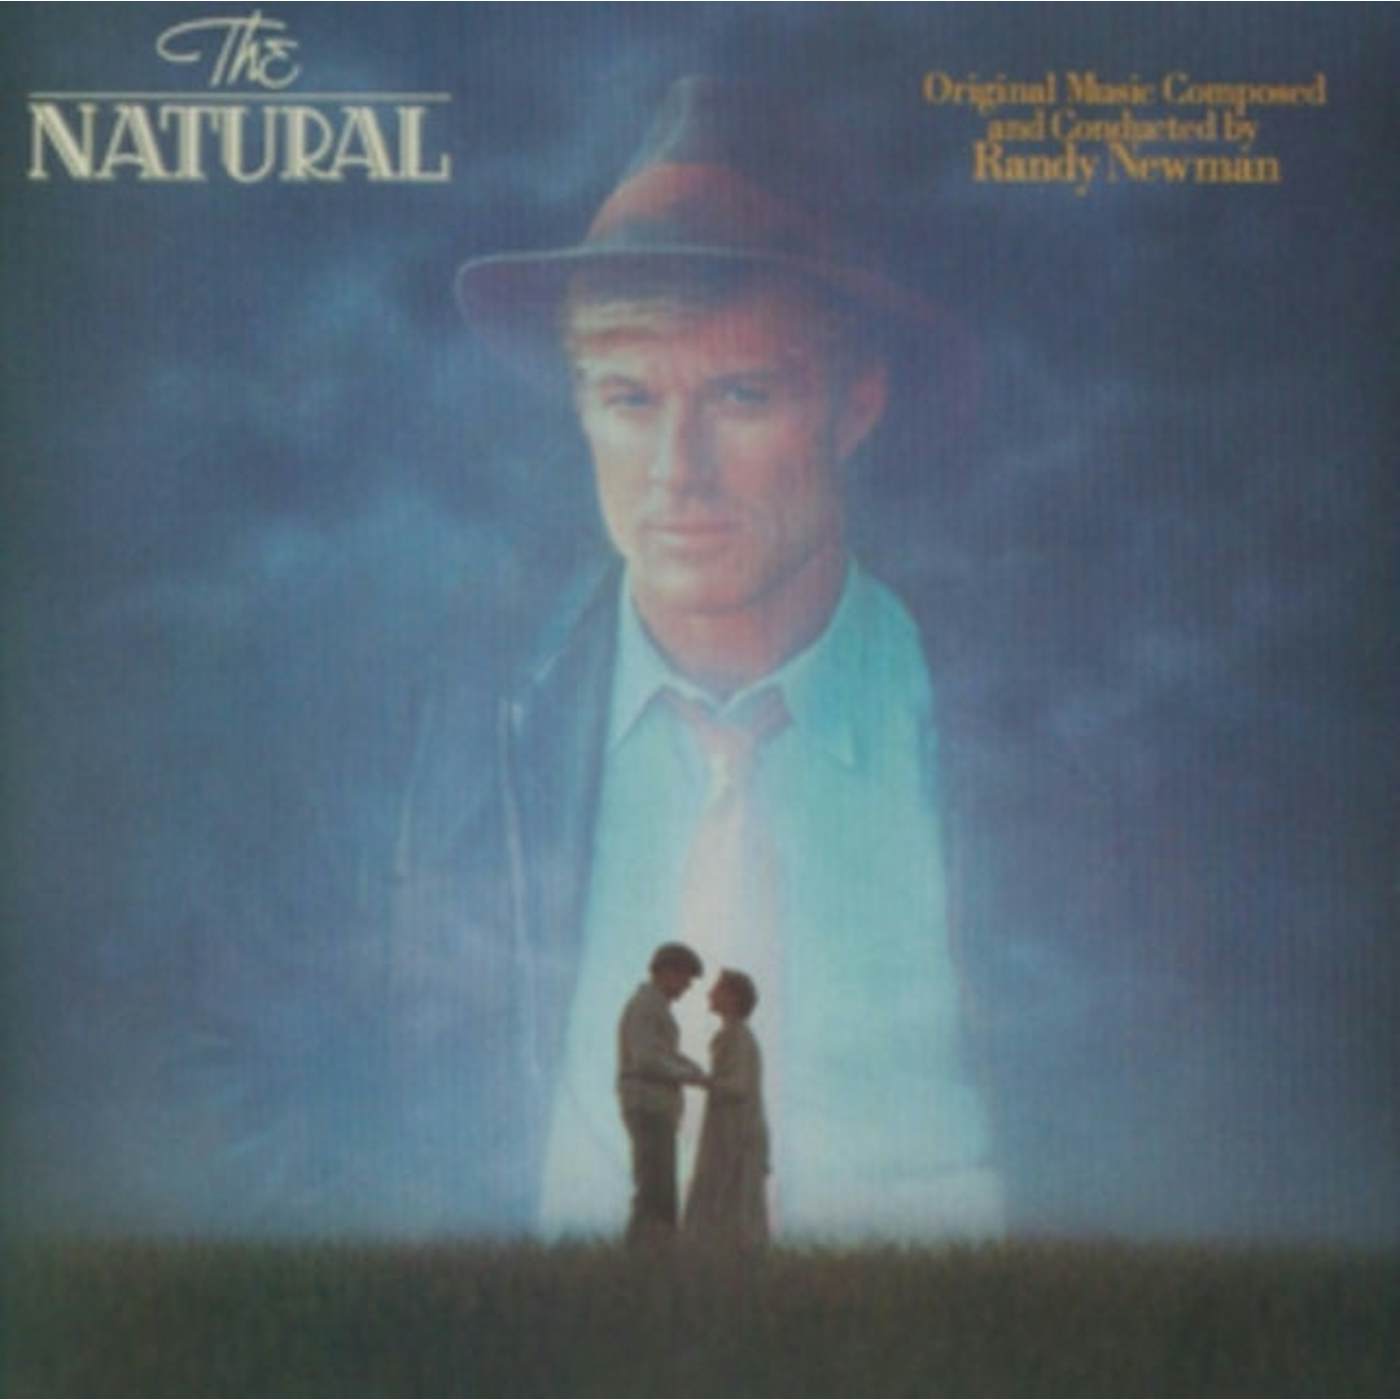 Randy Newman LP Vinyl Record - Natural